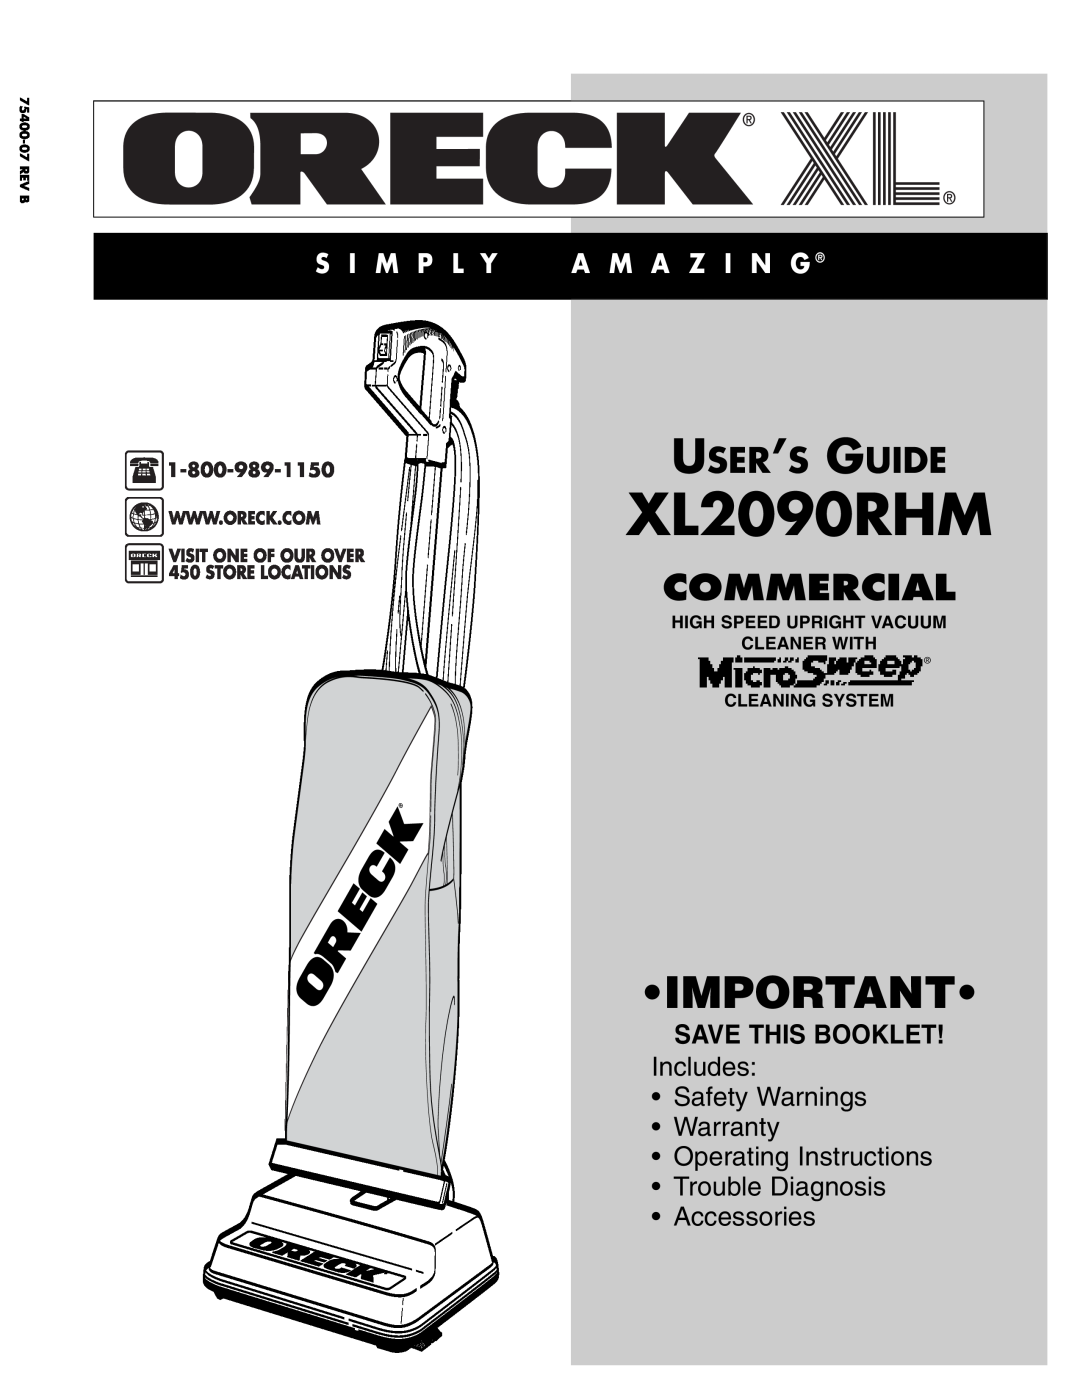 Oreck XL2090RHM warranty Commercial, User’S Guide, S I M P L Y, A M A Z I N G, Save This Booklet, Accessories 